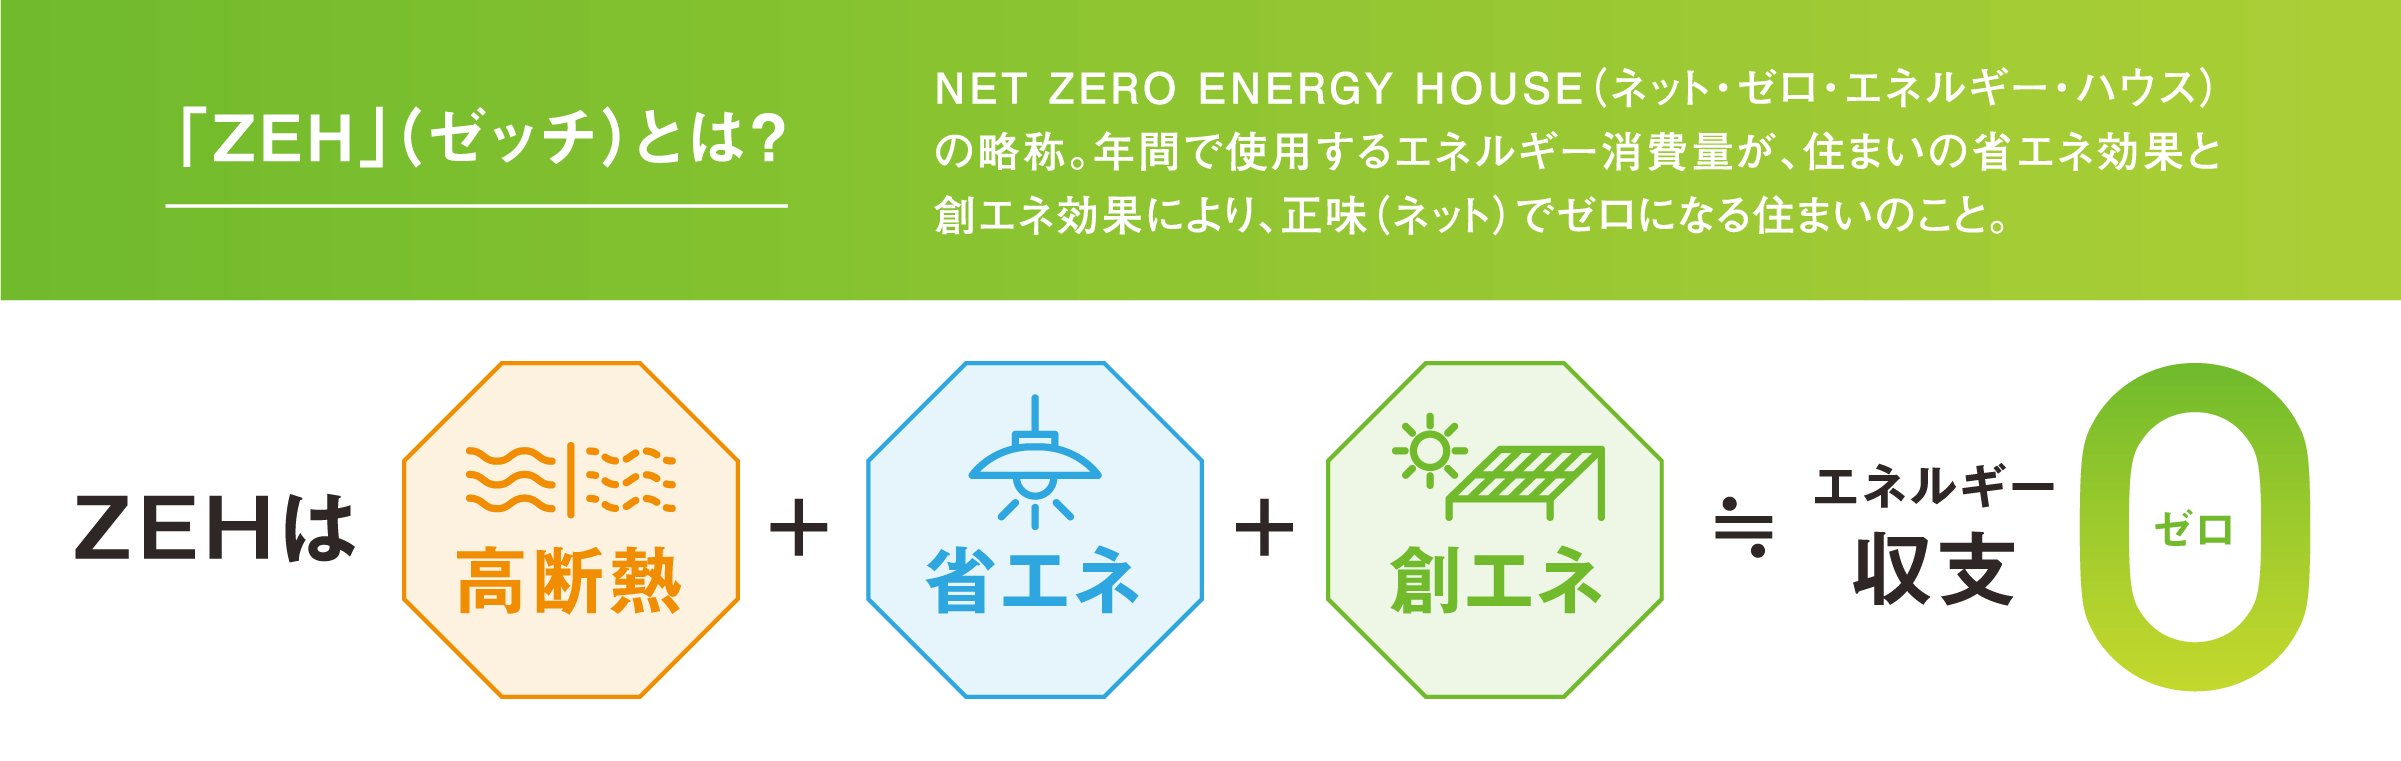 「ZEH」（ゼッチ）とは？NET ZERO ENERGY HOUSE（ネット・ゼロ・エネルギー・ハウス）の略称。年間で使用するエネルギー消費量が、住まいの省エネ効果と創エネ効果により、正味（ネット）でゼロになる住まいのこと。